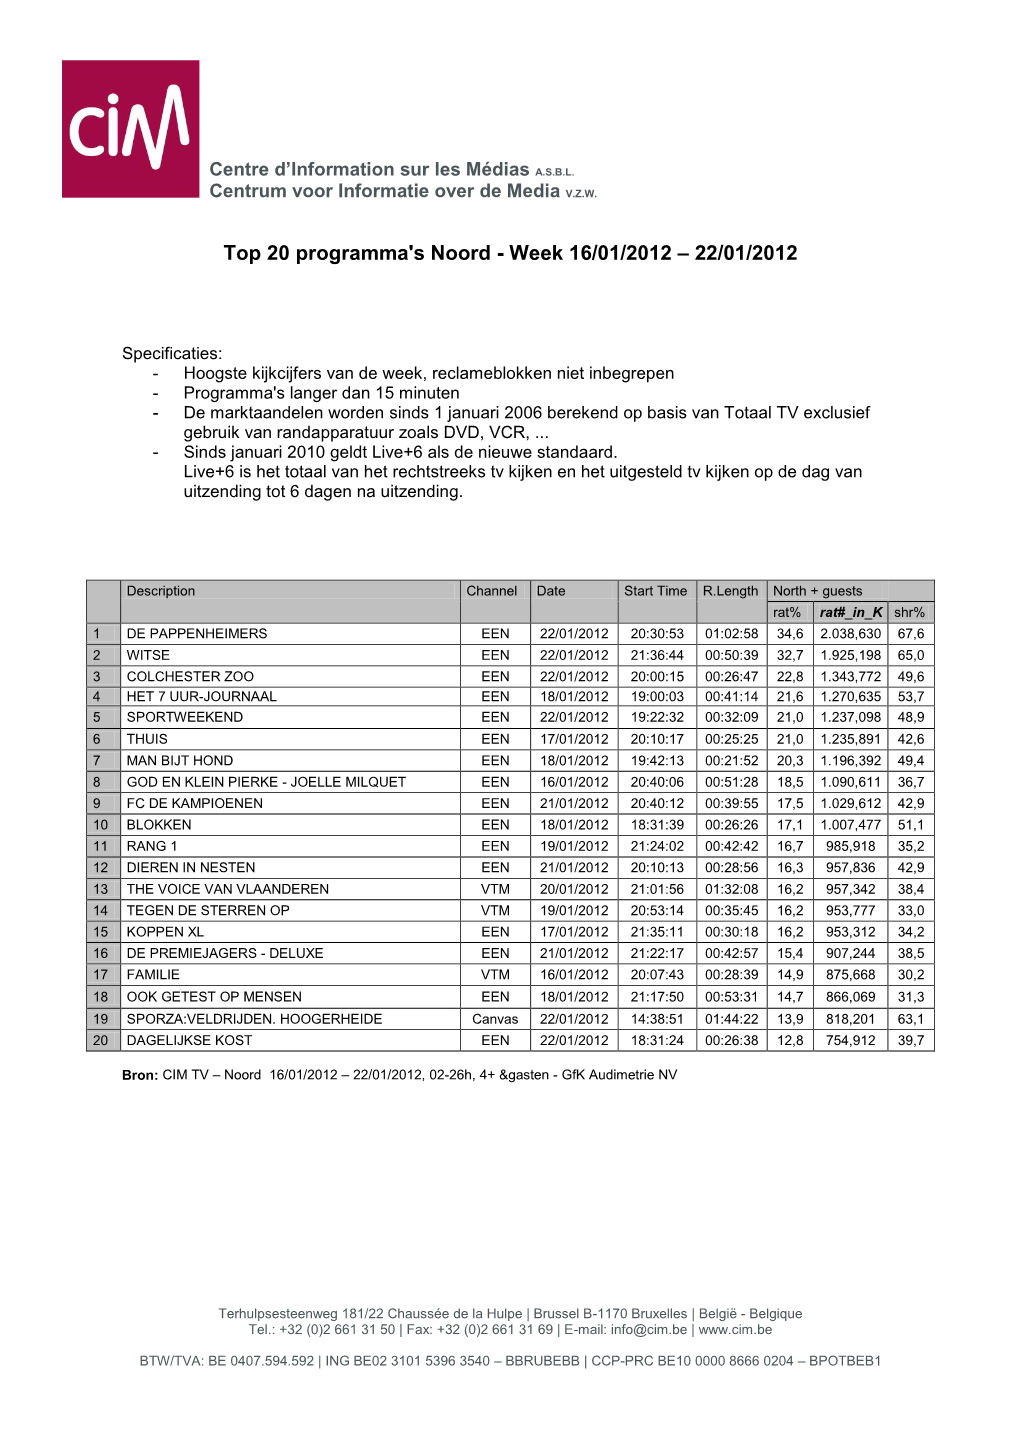 Top 20 Programma's Noord - Week 16/01/2012 – 22/01/2012